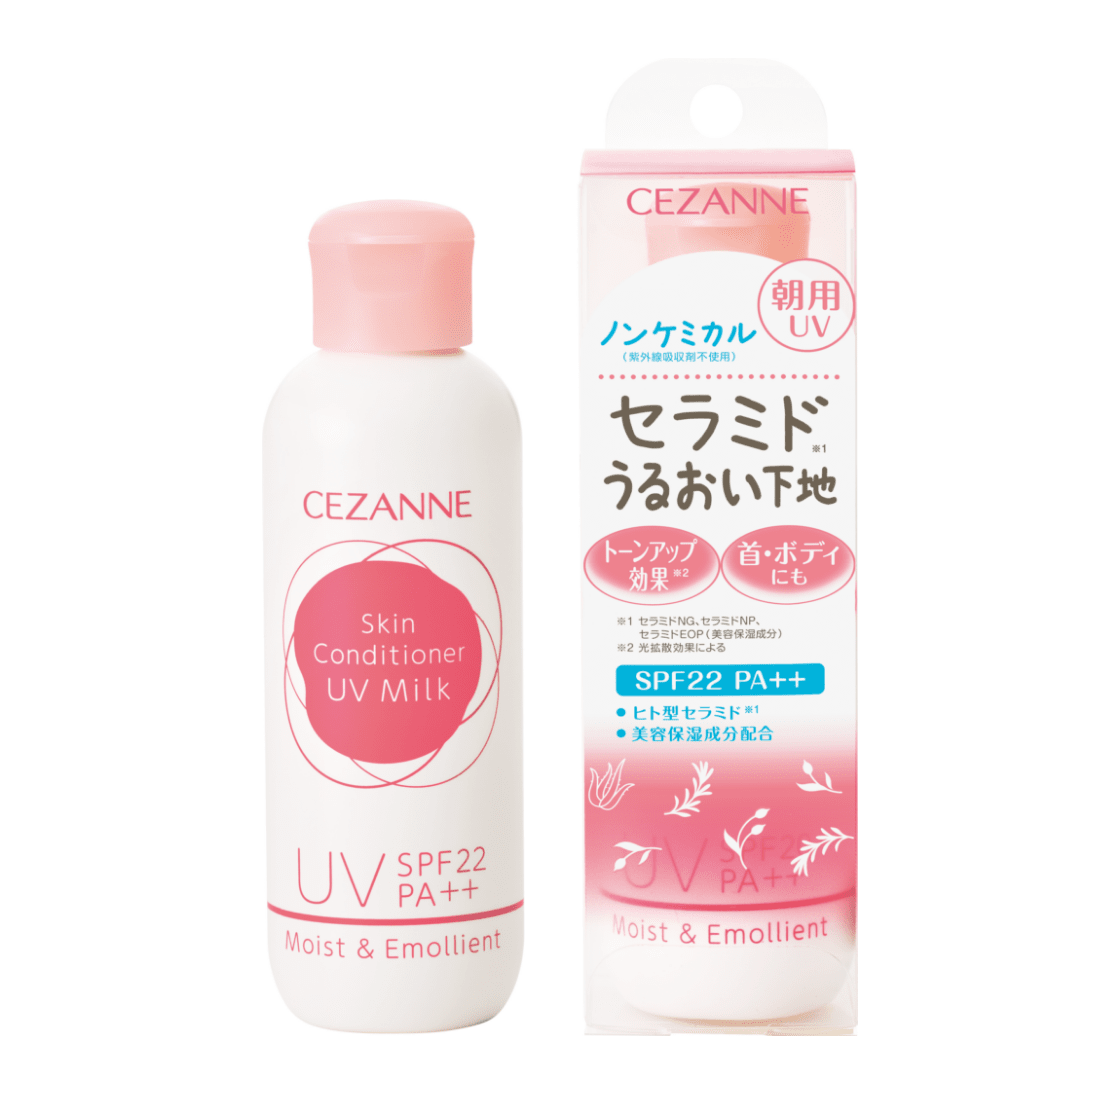 朝用スキンコンディショナー UVミルク | CEZANNE/セザンヌ化粧品